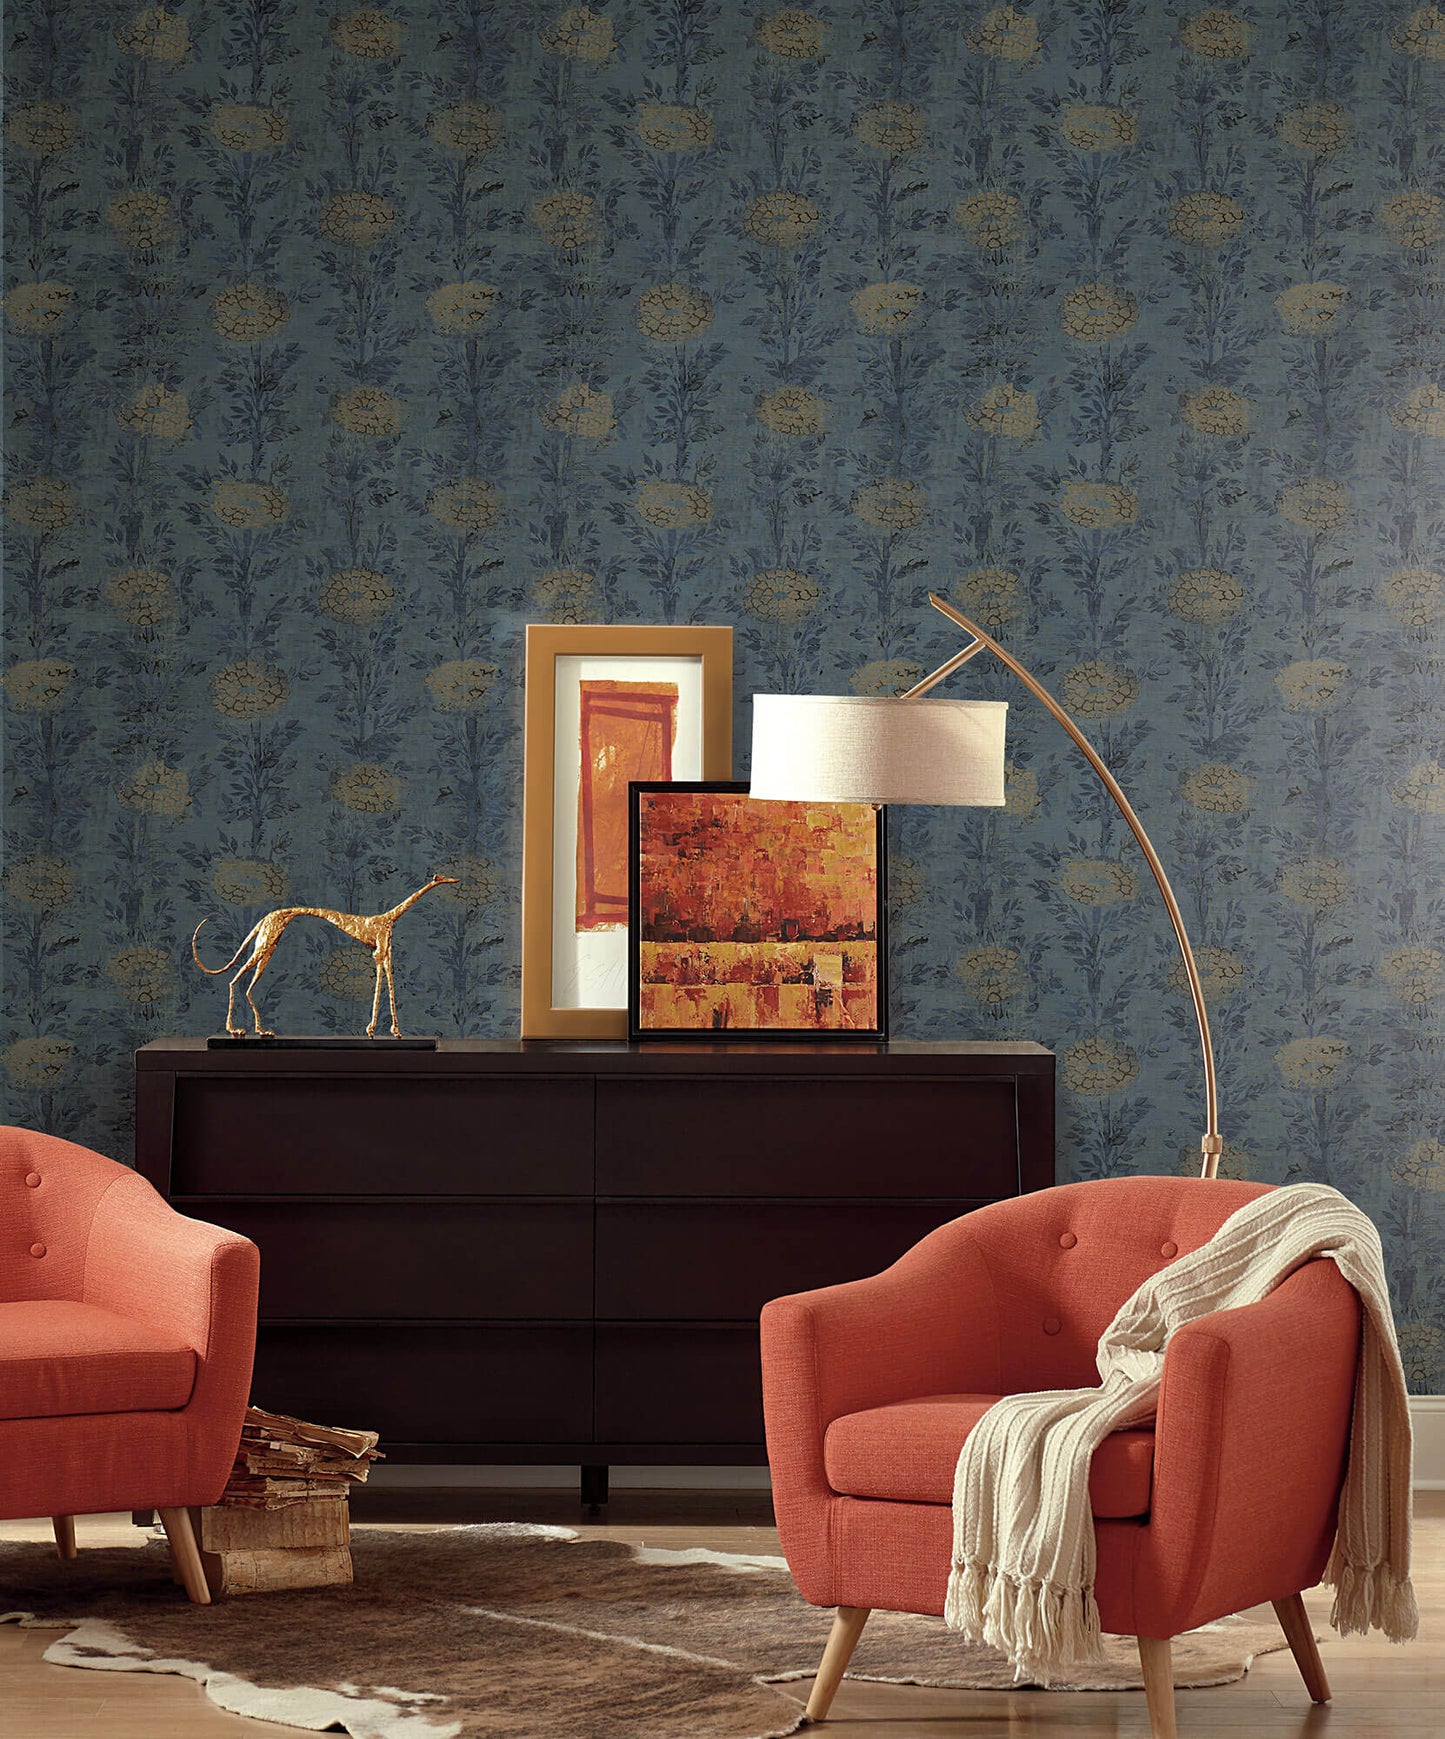 Ronald Redding Tea Garden French Marigold Wallpaper - Blue & Gold